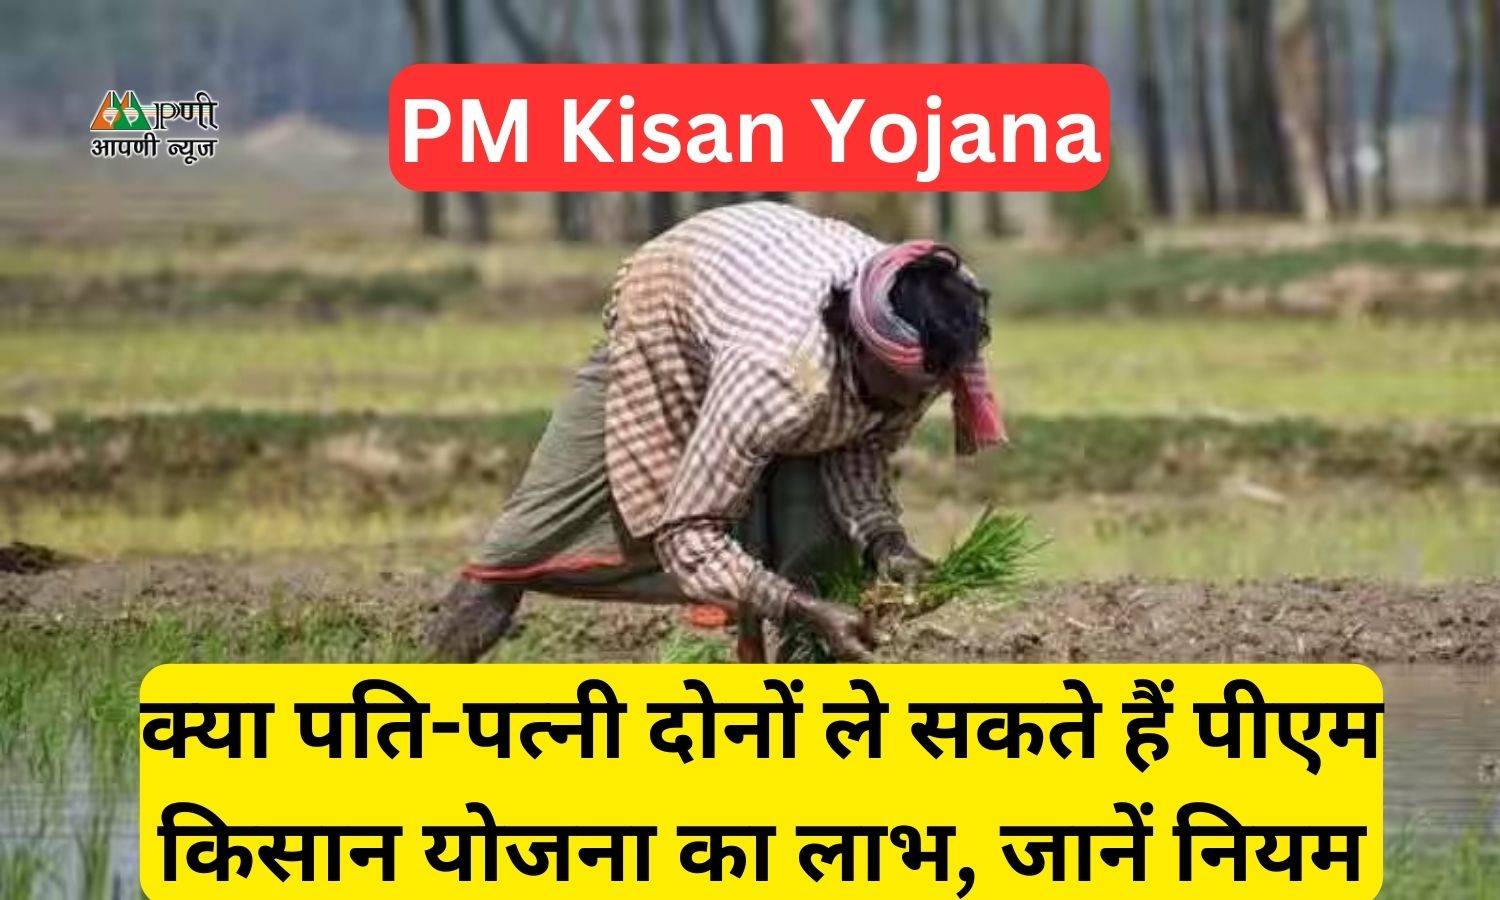 PM Kisan Yojana: क्या पति-पत्नी दोनों ले सकते हैं पीएम किसान योजना का लाभ, जानें नियम